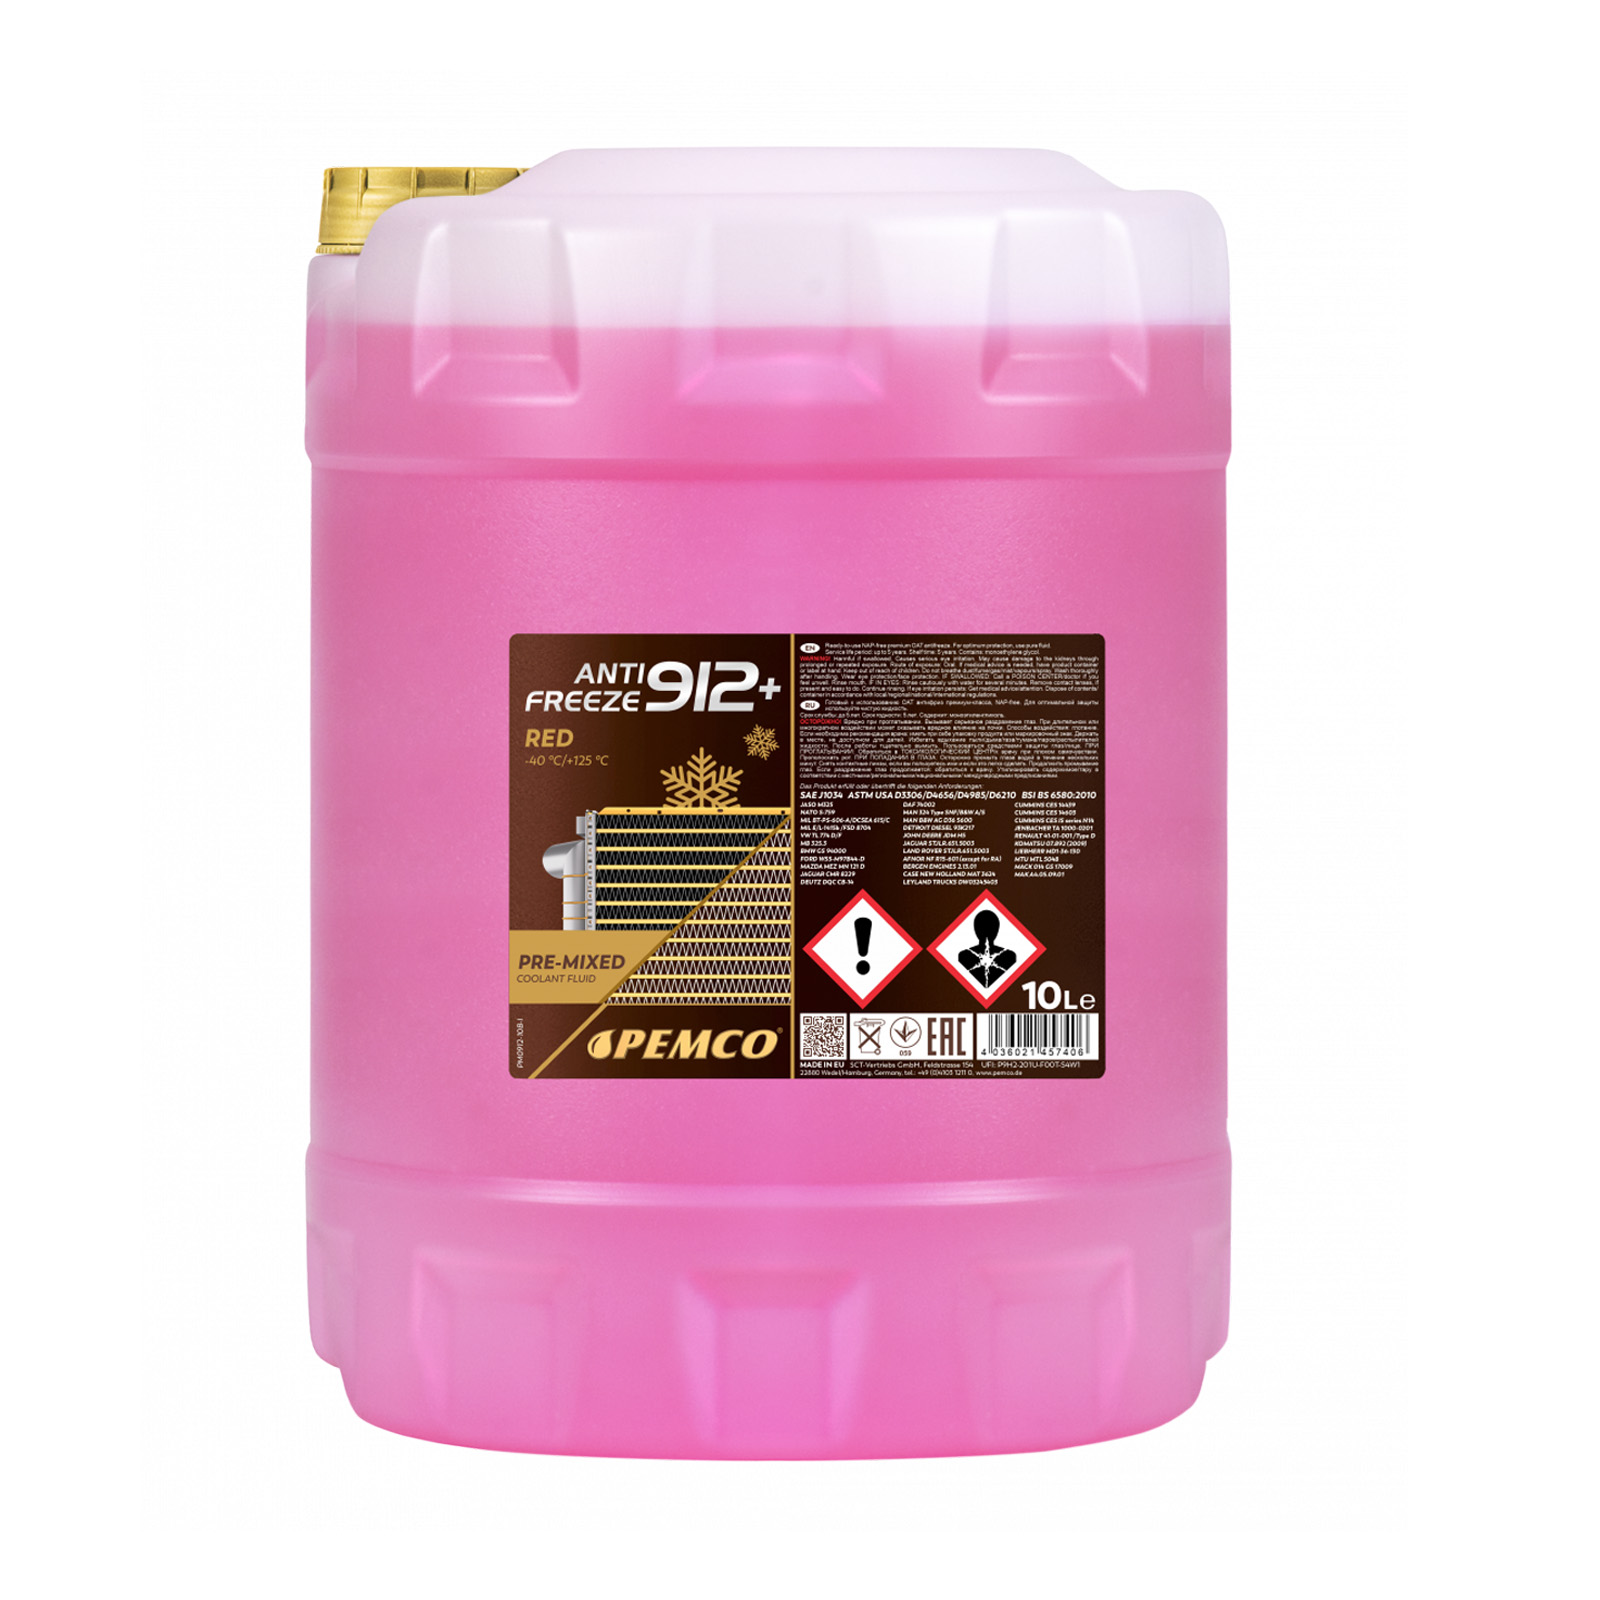 20 Liter PEMCO Anti Freeze 912+ Kühler Frostschutz bis -40C rosa rot violett